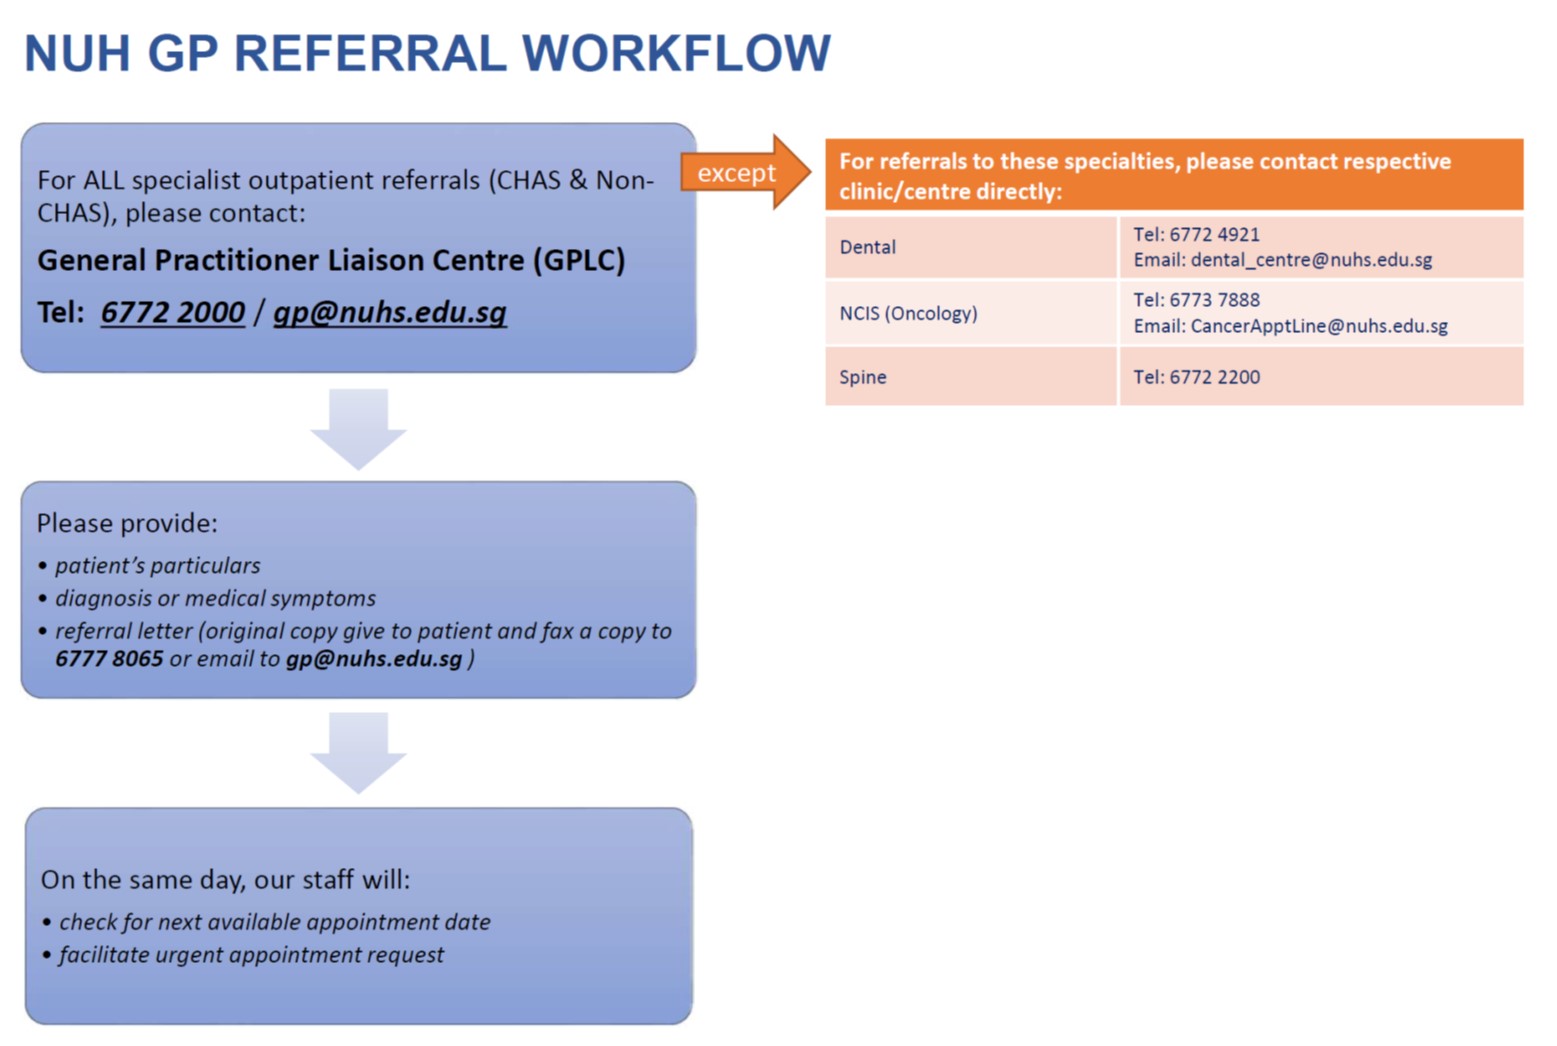 NUH GP referral workflow_Oct2021.jpg